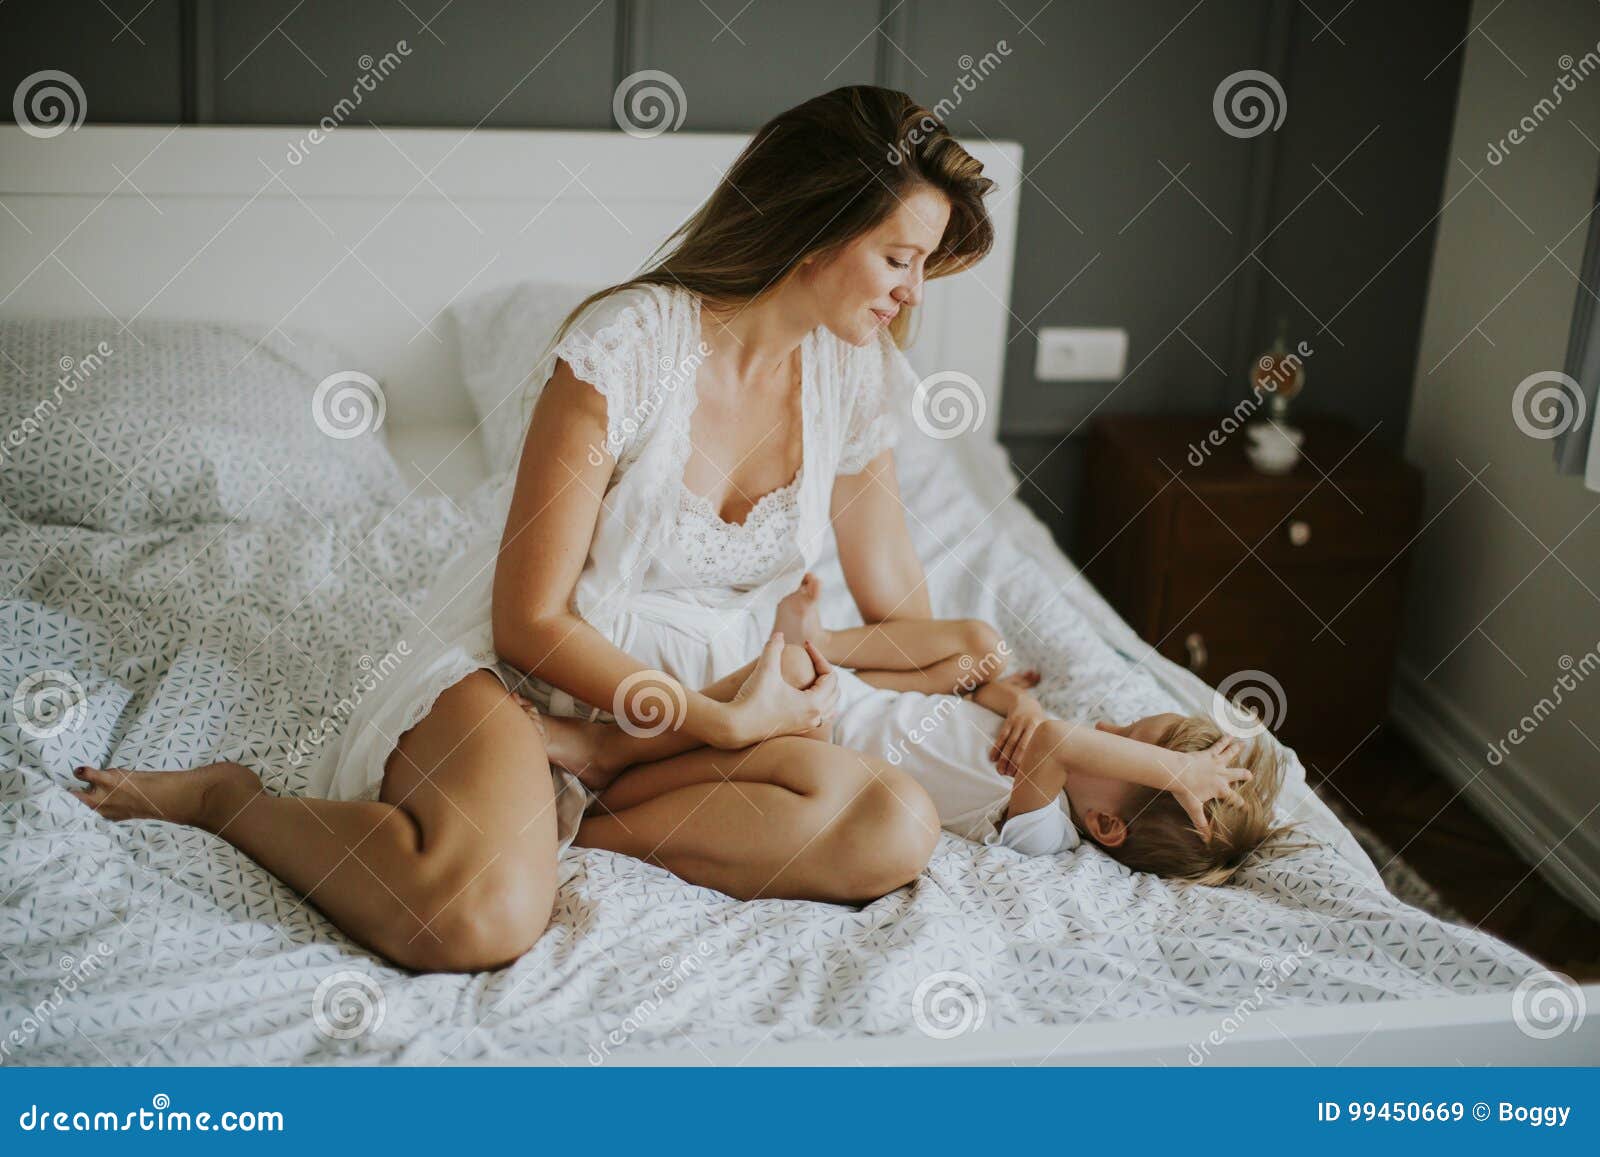 Молодые мамы в постели. Мать у кровати. Мамочки на кровати. Женщина и мальчик в постели. С мамой в постели рассказы